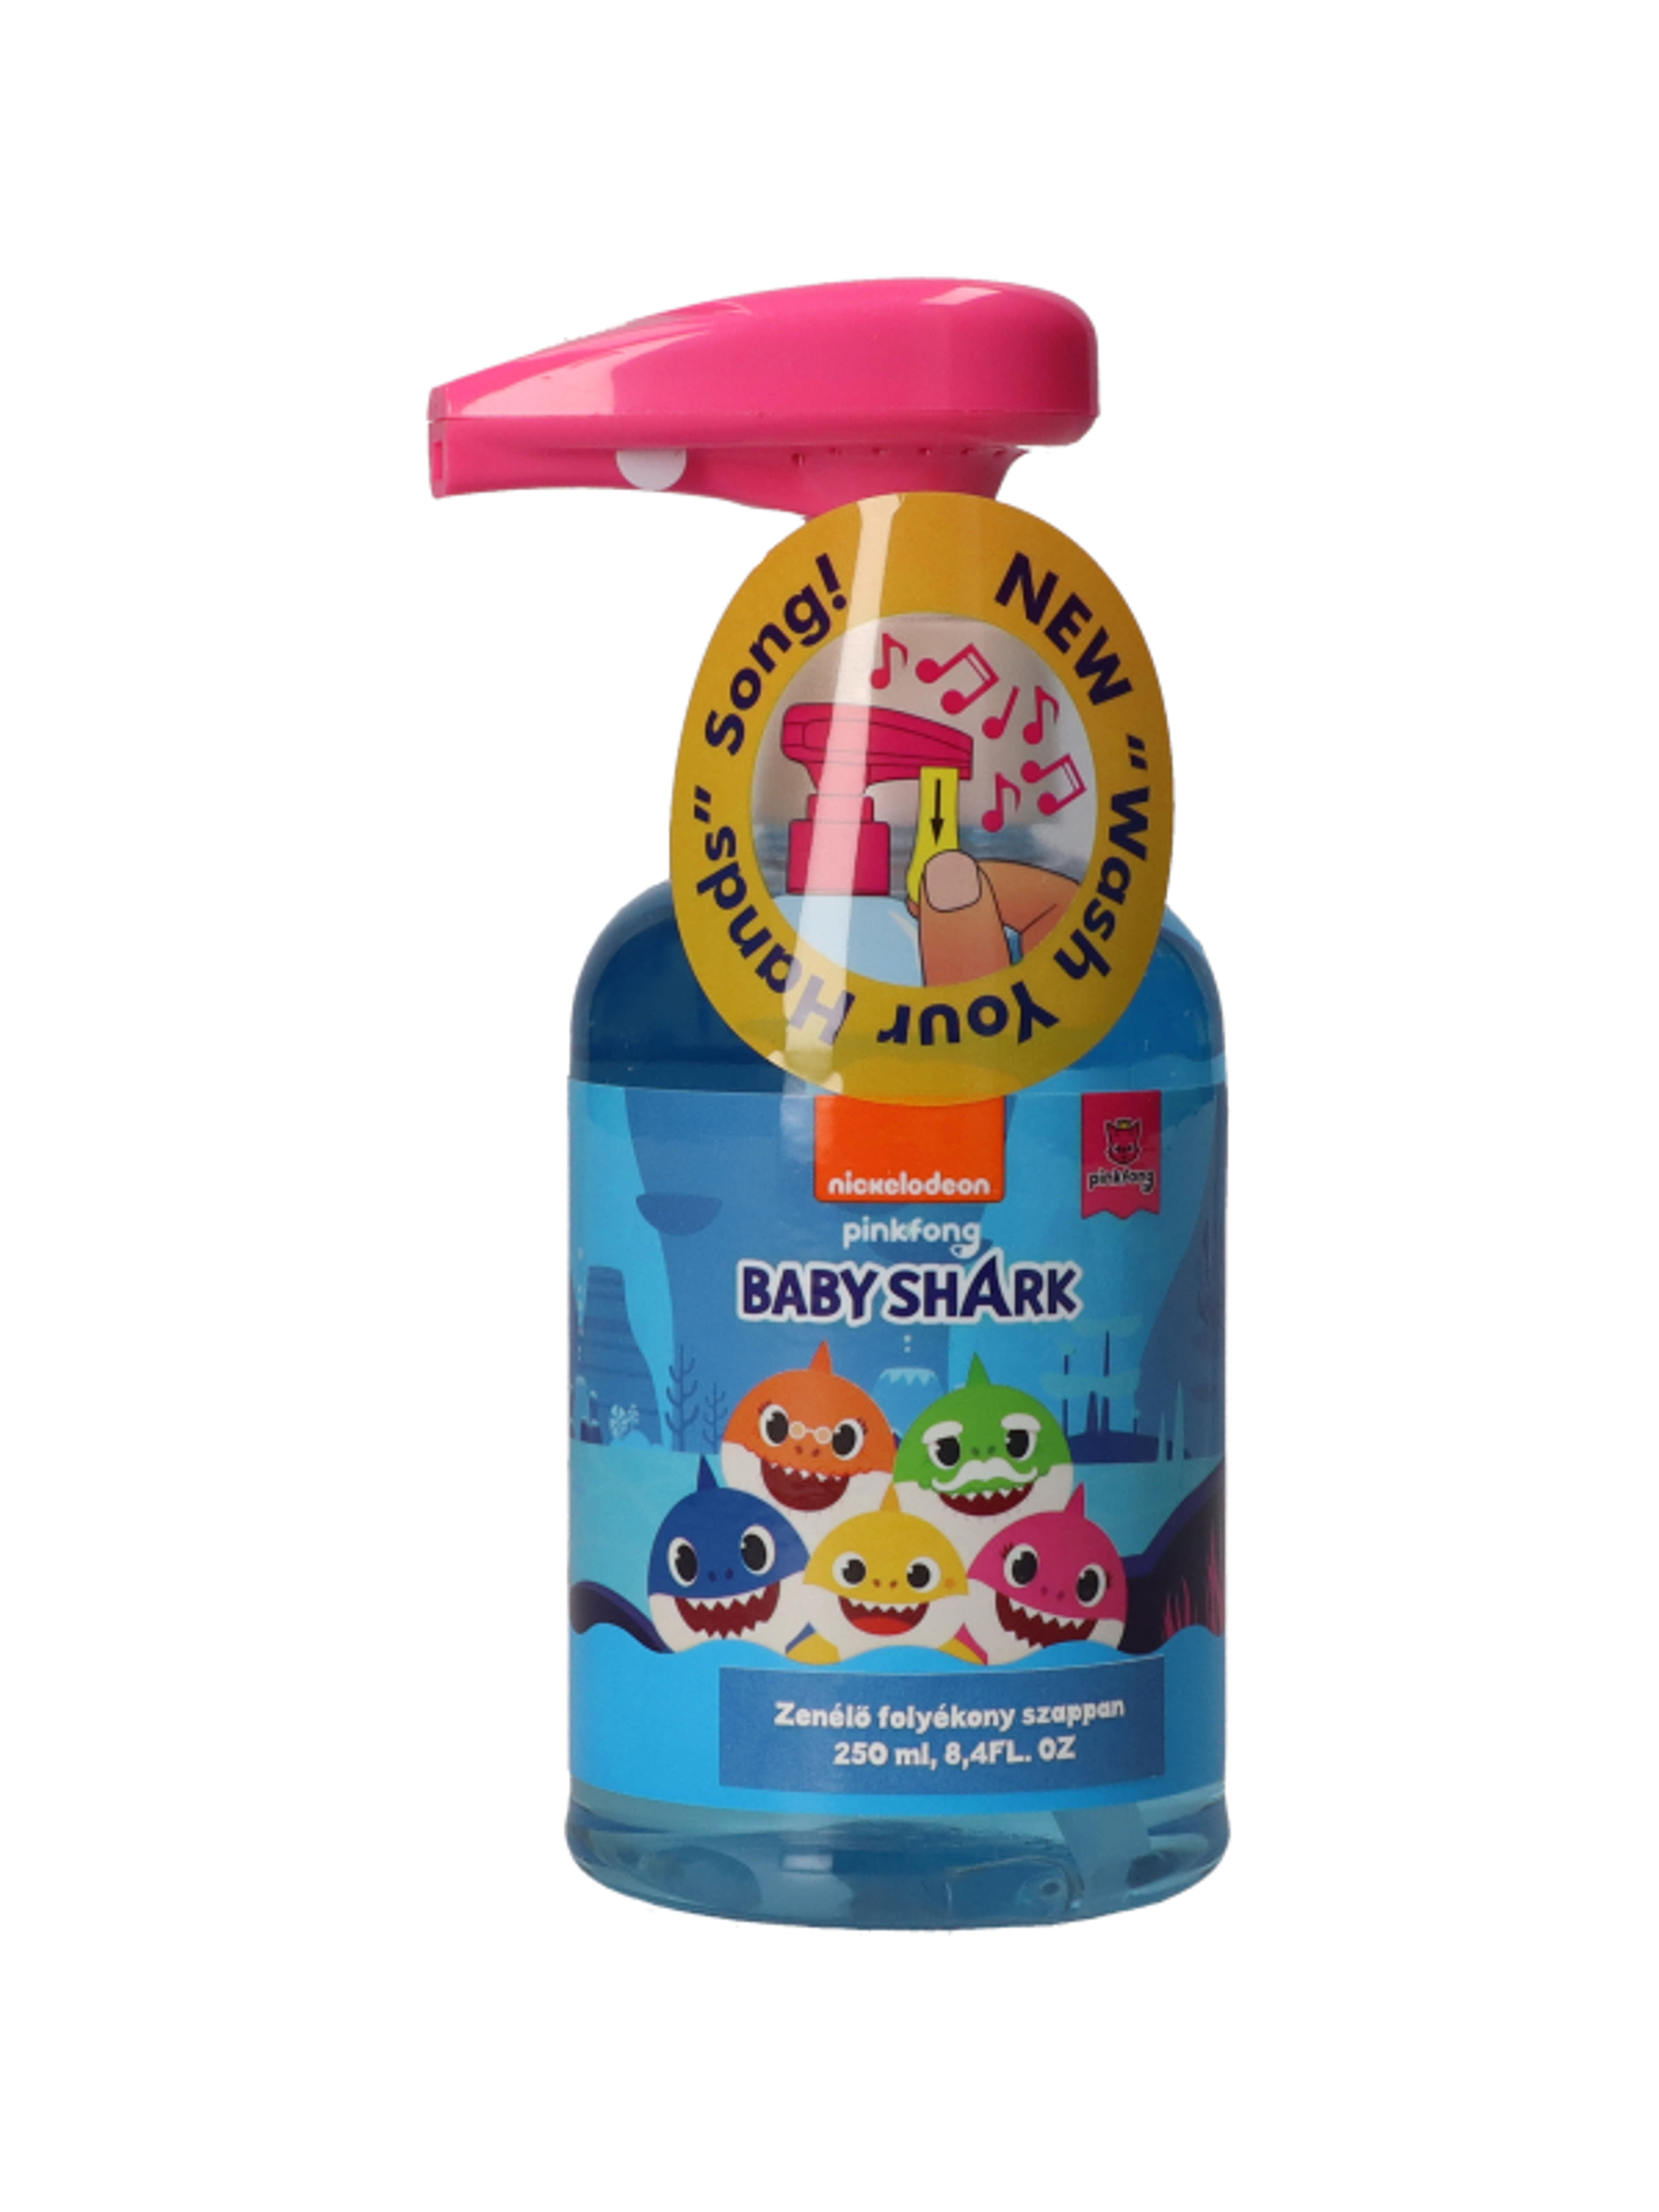 Baby shark zenélő folyékony szappan - 250 ml